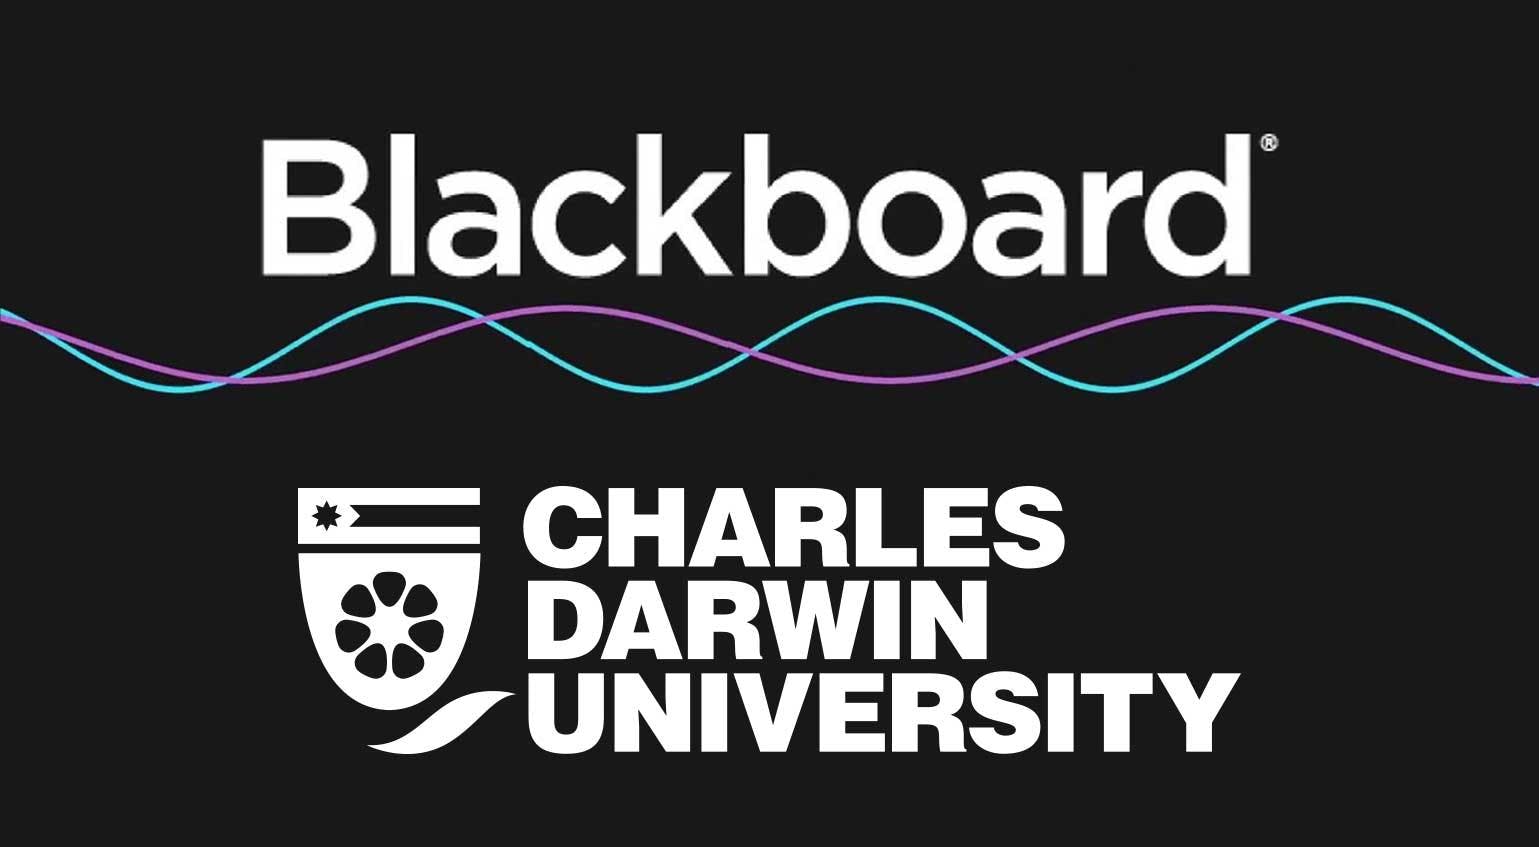 CDU Blackboard University Days - Blackboard Learn Ultra Roadmap and key developments (CDU Staff only)